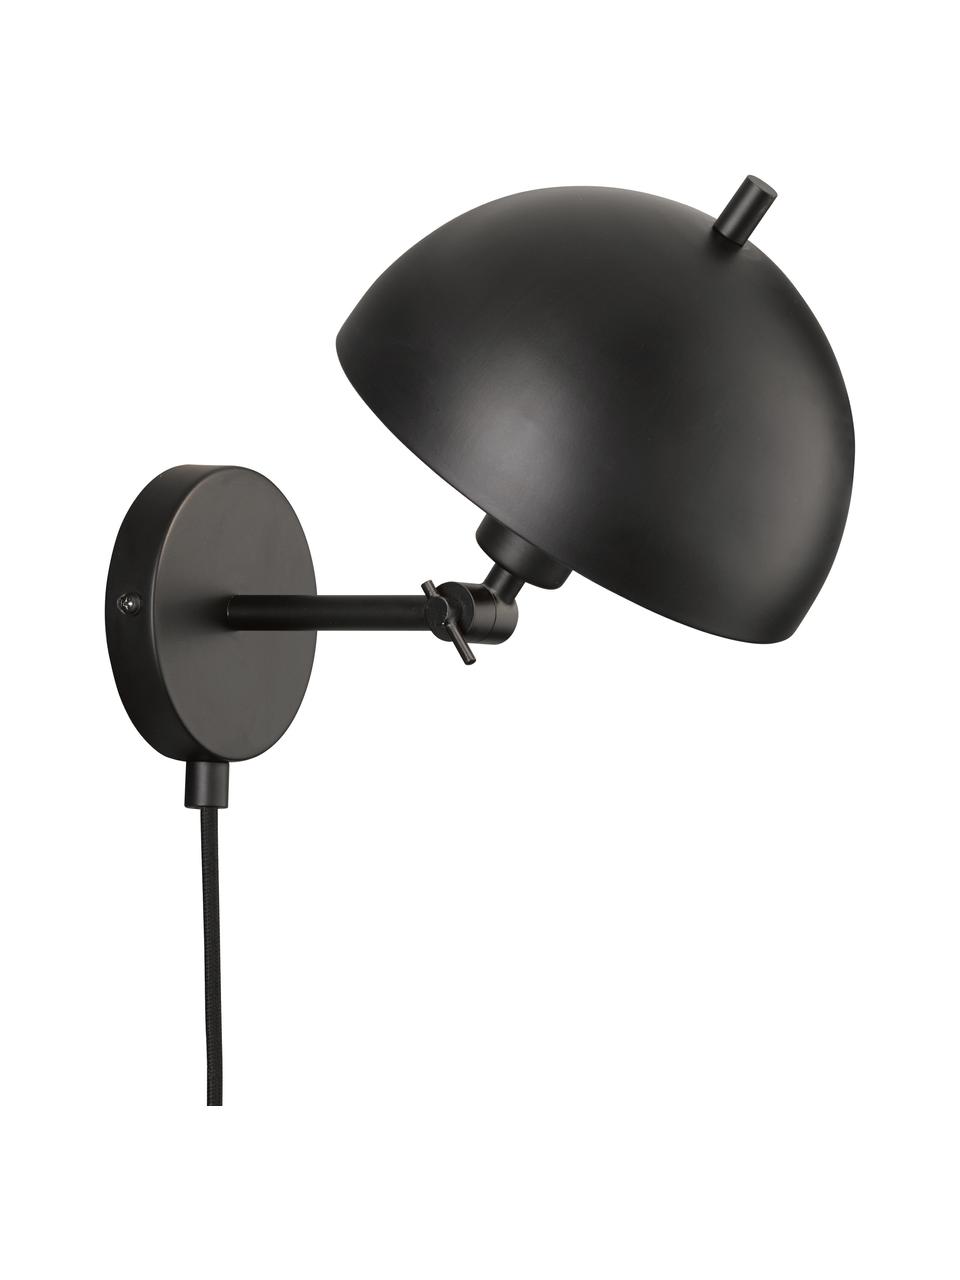 Verstellbare Retro-Wandleuchte Kia mit Stecker, Lampenschirm: Metall, beschichtet, Schwarz, 20 x 25 cm